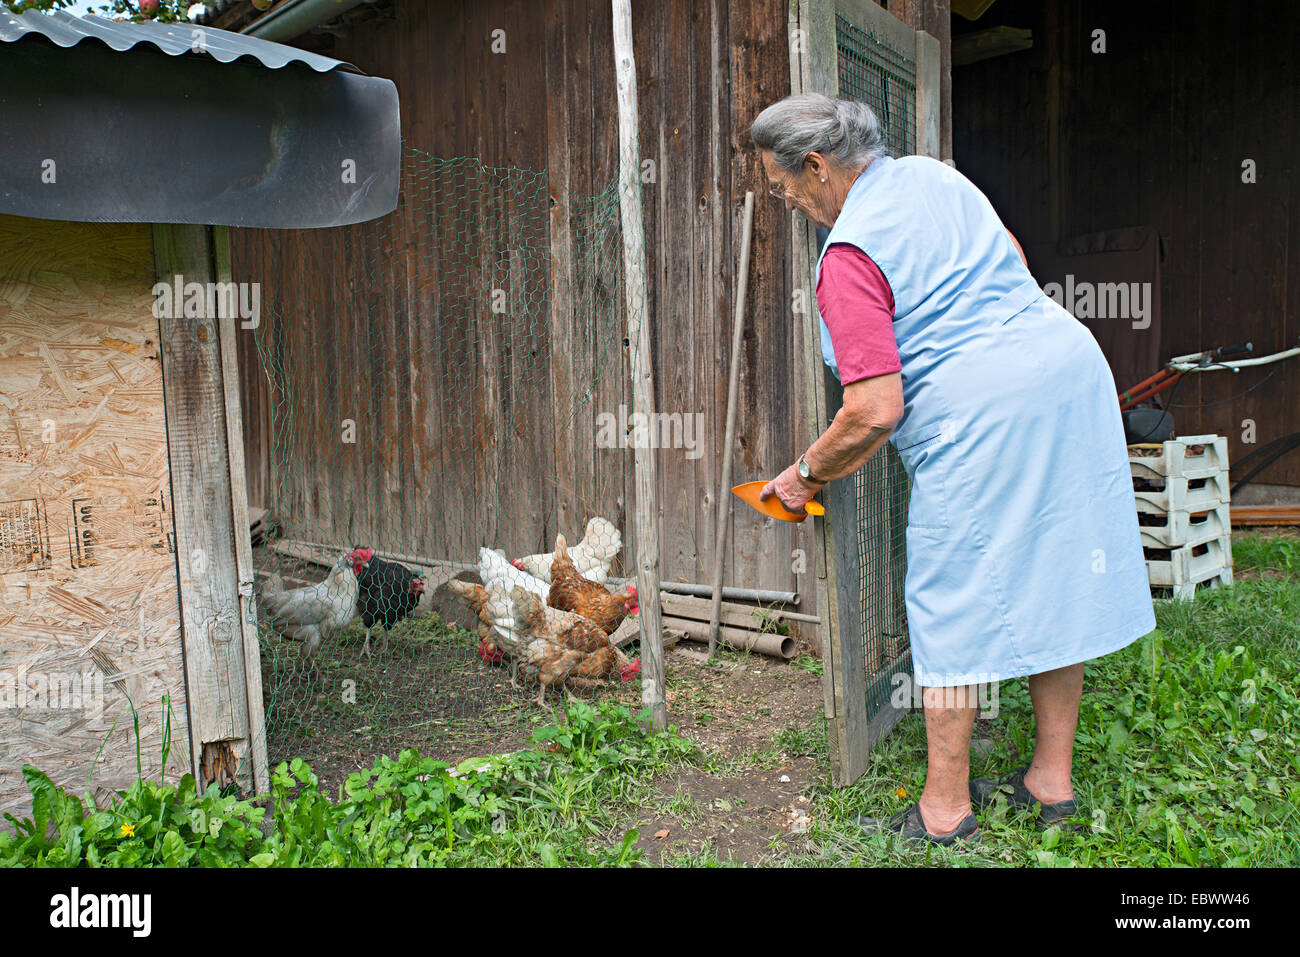 Exploitant agricole travaillant sur la ferme, nourrir les poulets, Kreutner ferme familiale, District de Schwaz, Tyrol, Autriche Famille Banque D'Images